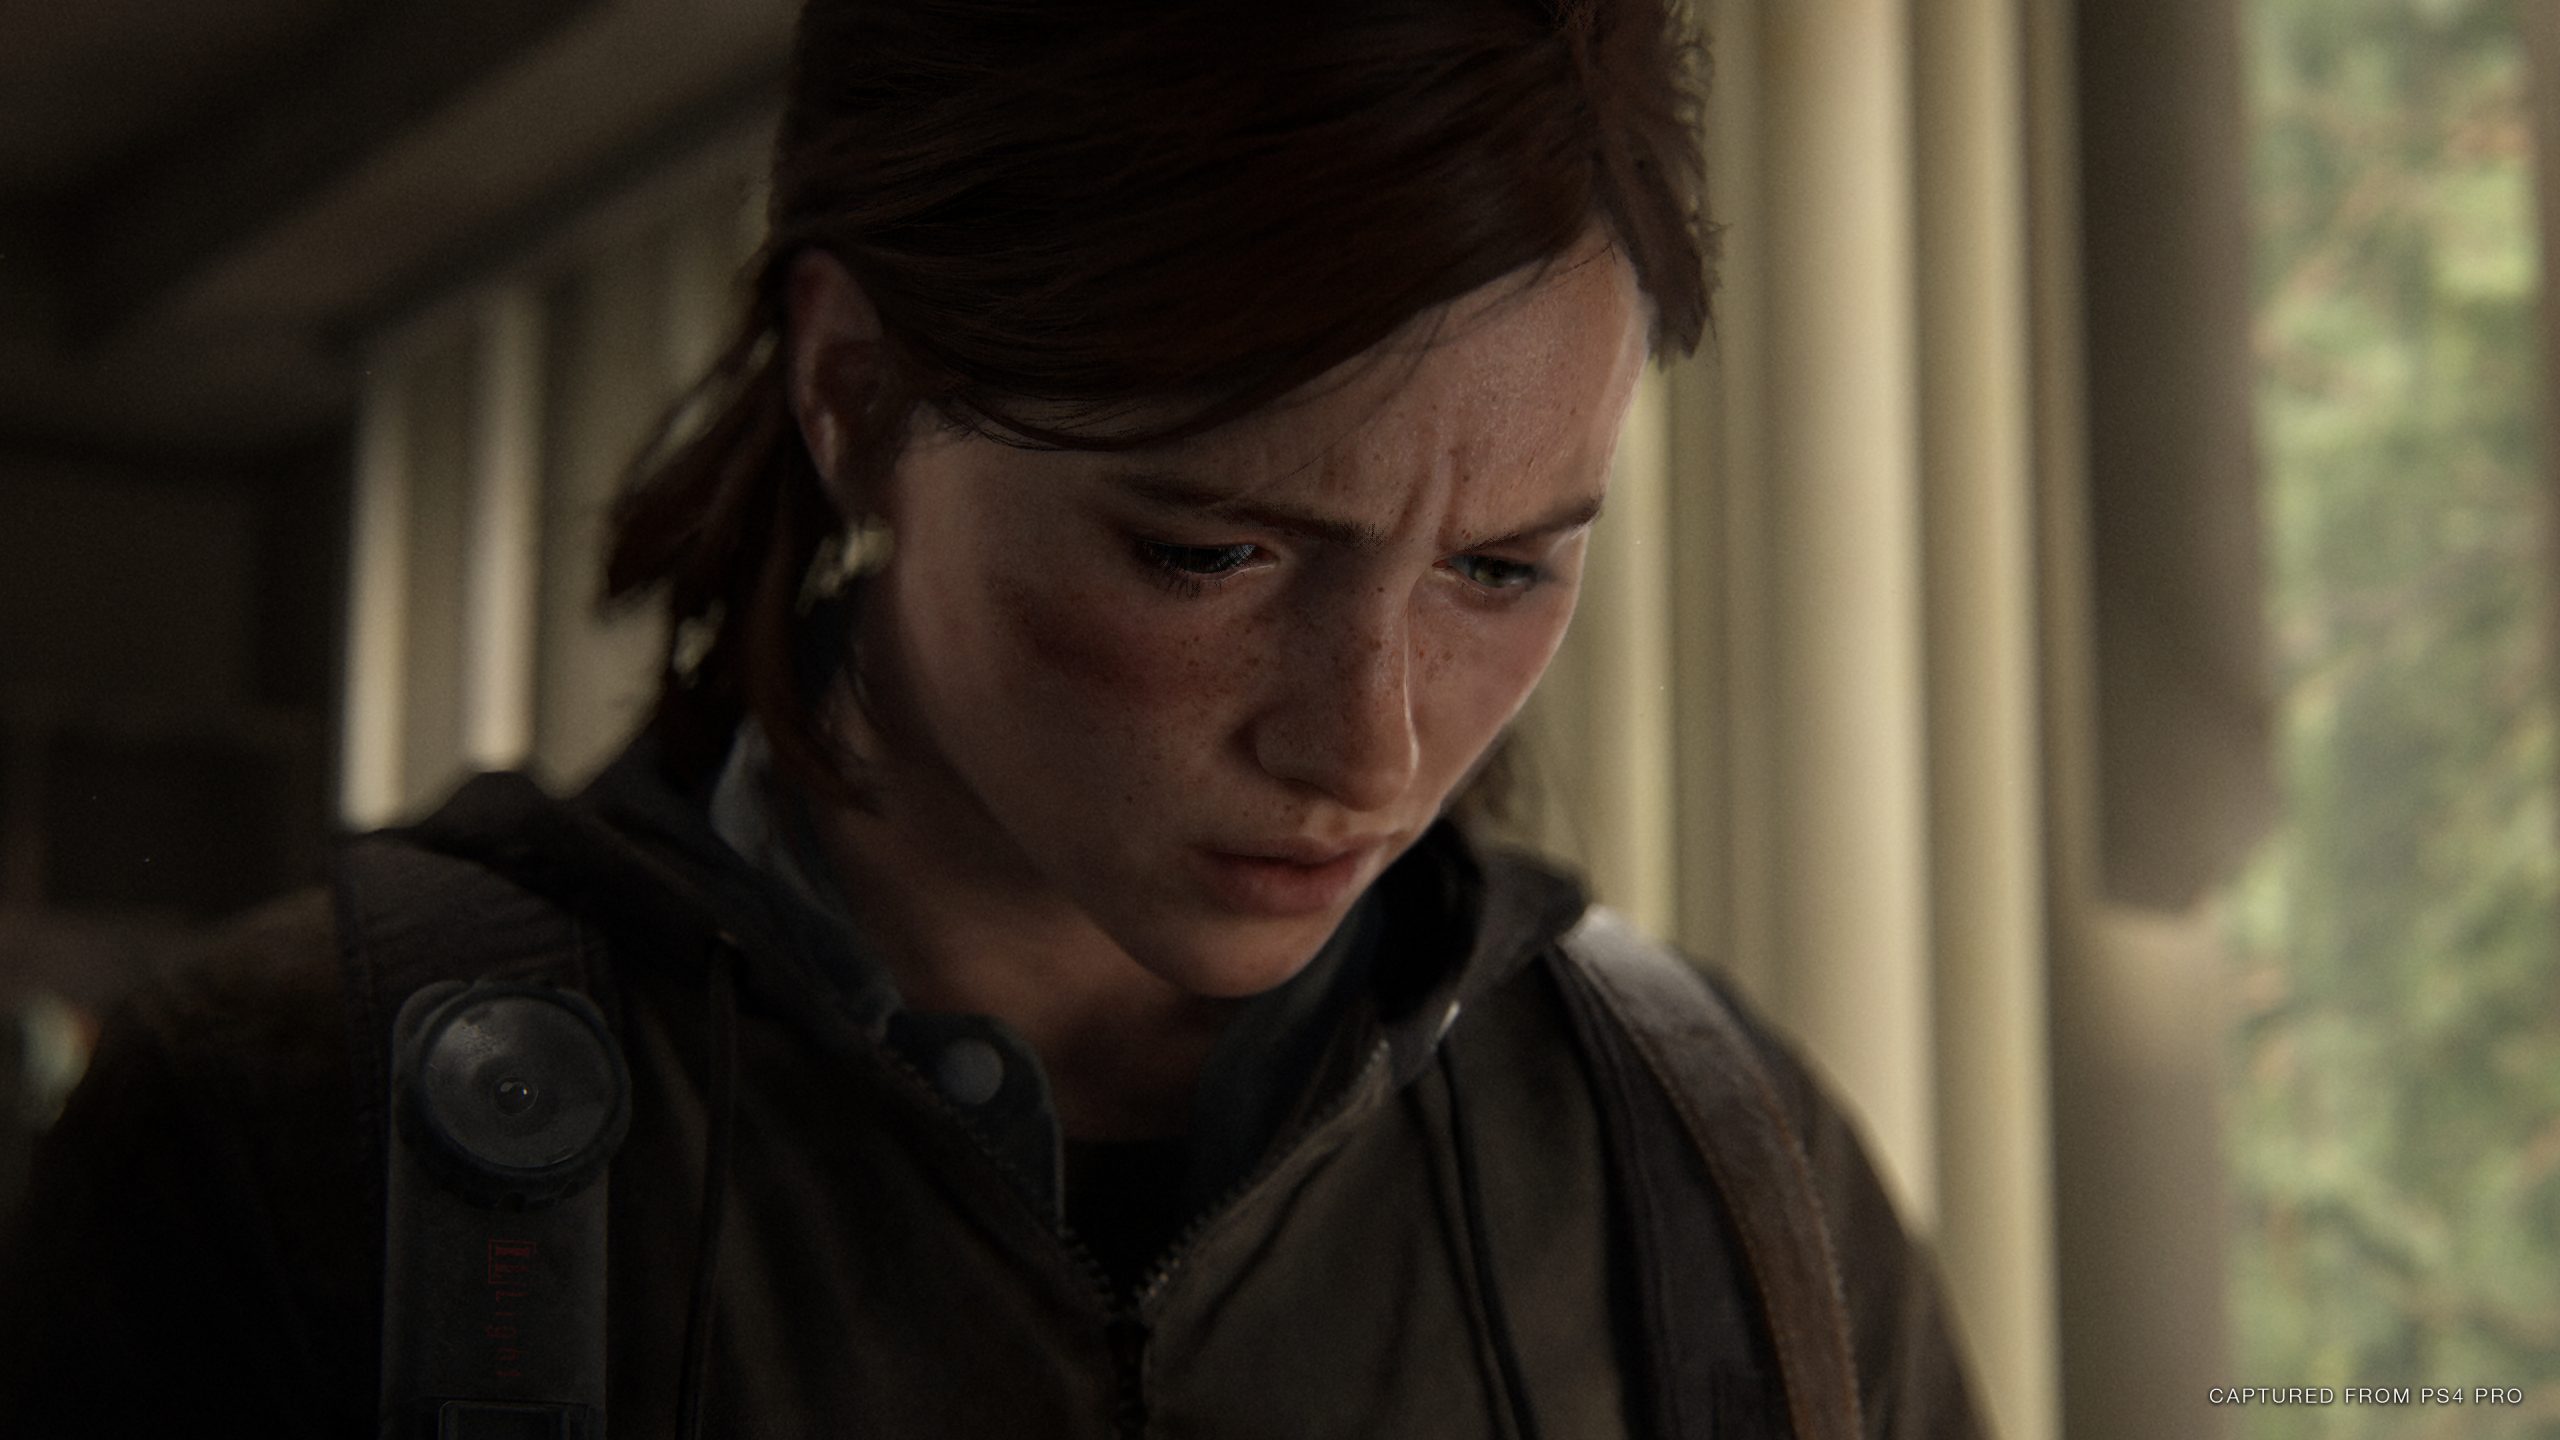 صورة The Last of Us 2 أفضل ألعاب 2020 بتصويت اللاعبين على Metacritic